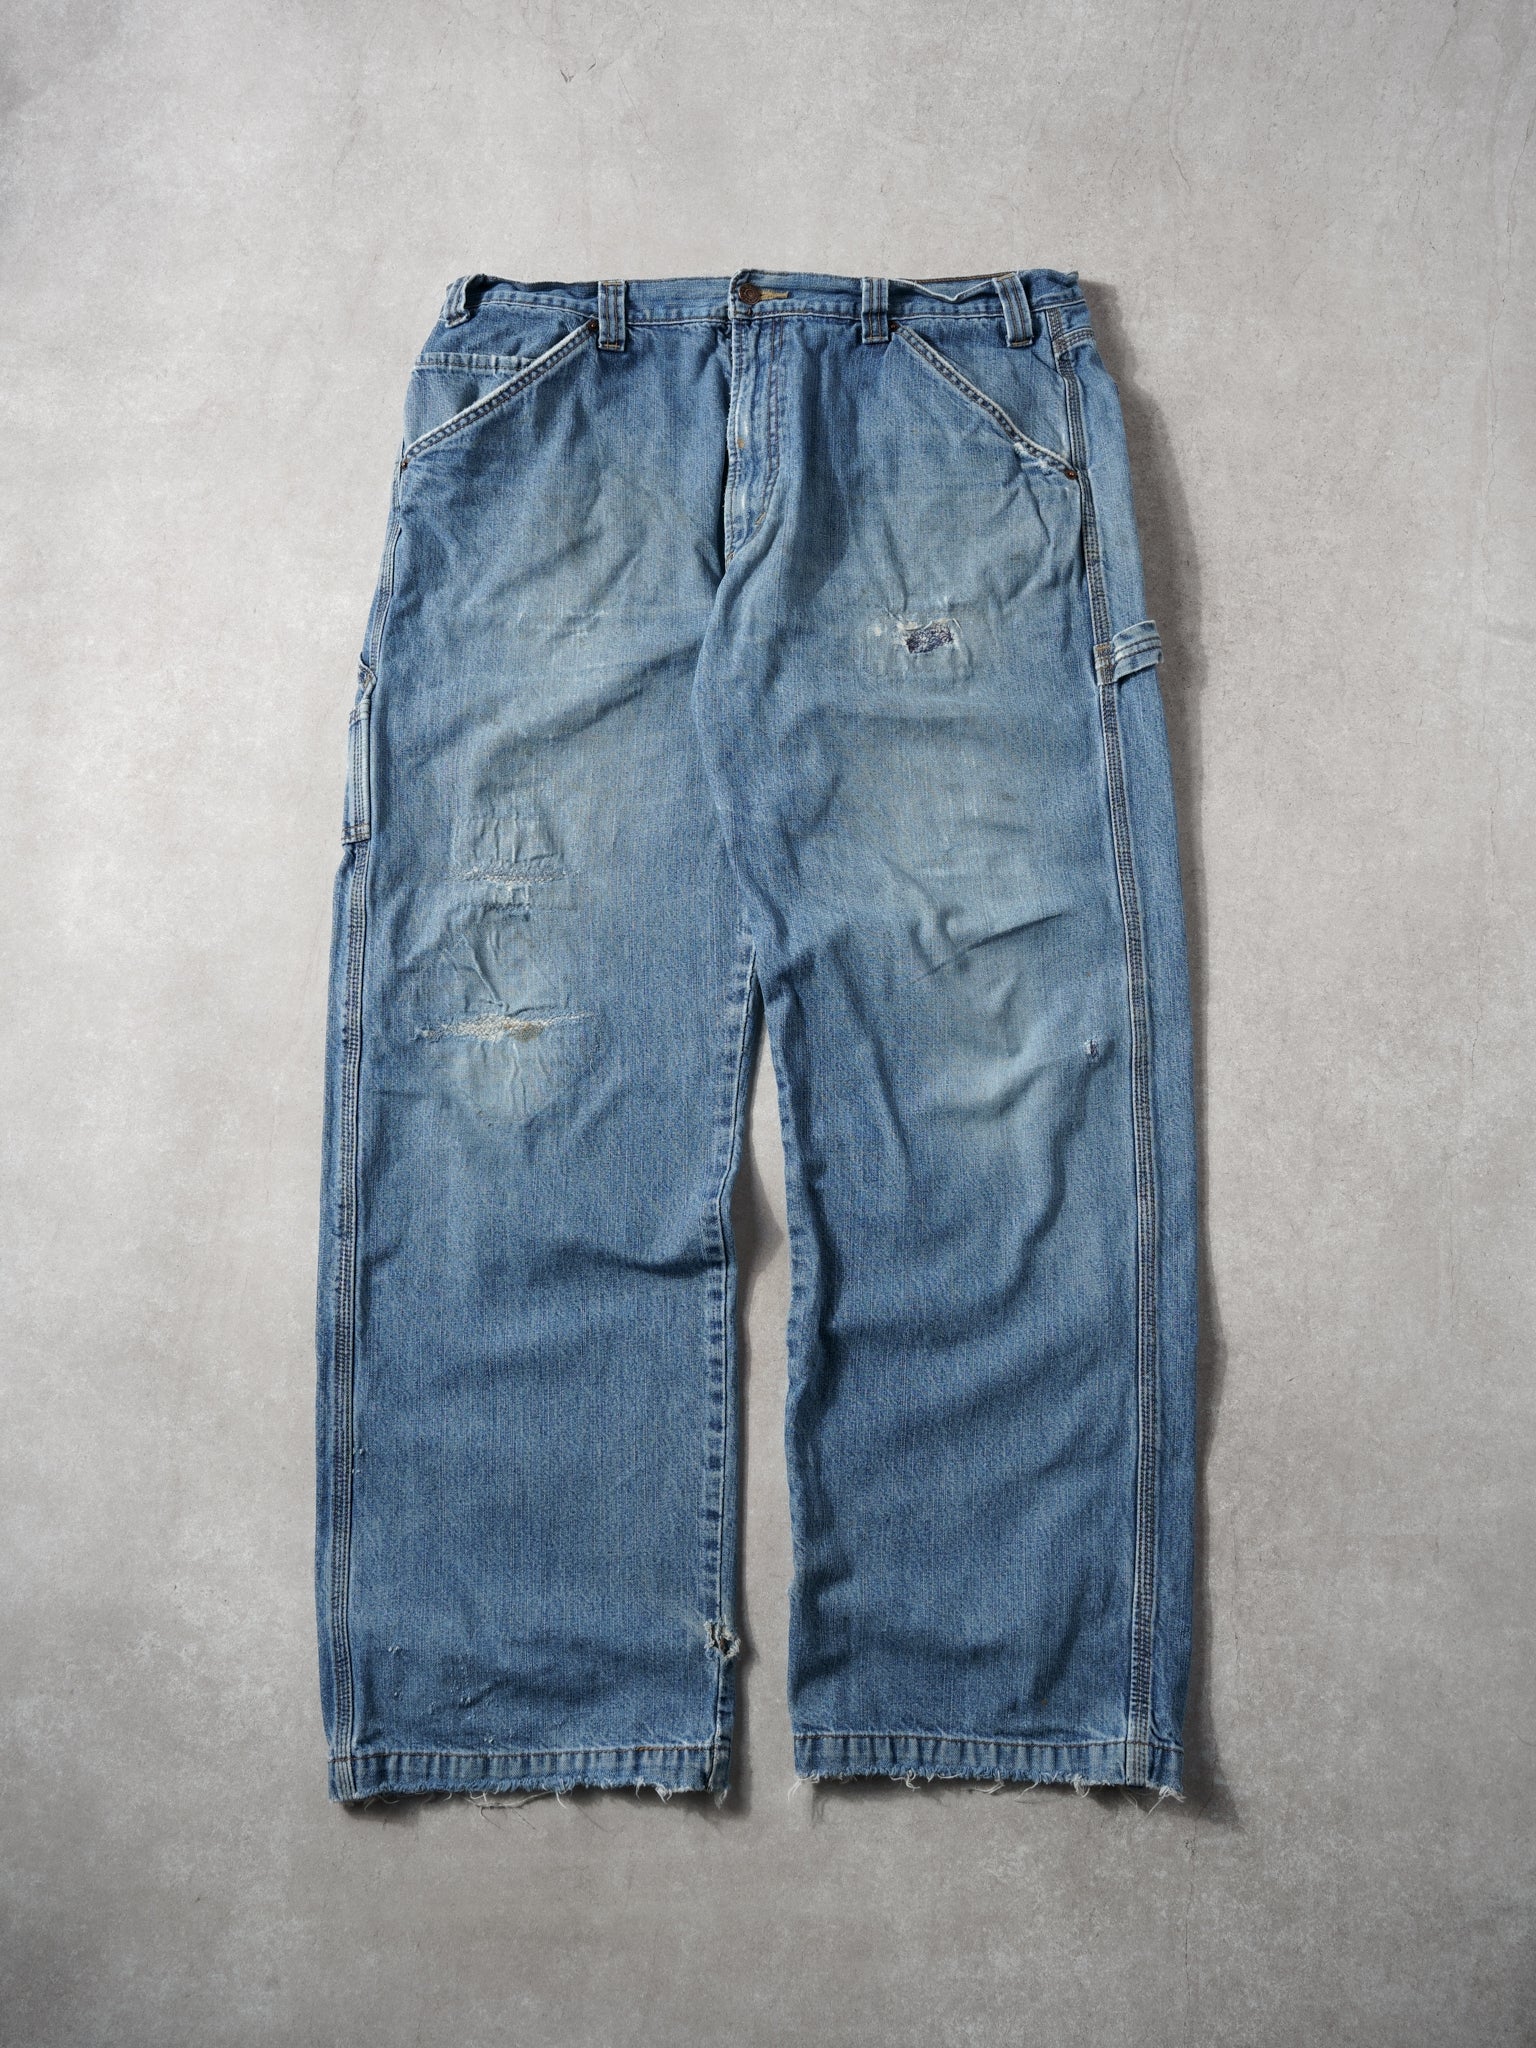 Vintage 90s Light Wash Blue Levi's Denim Carpenter Pants (38x32)